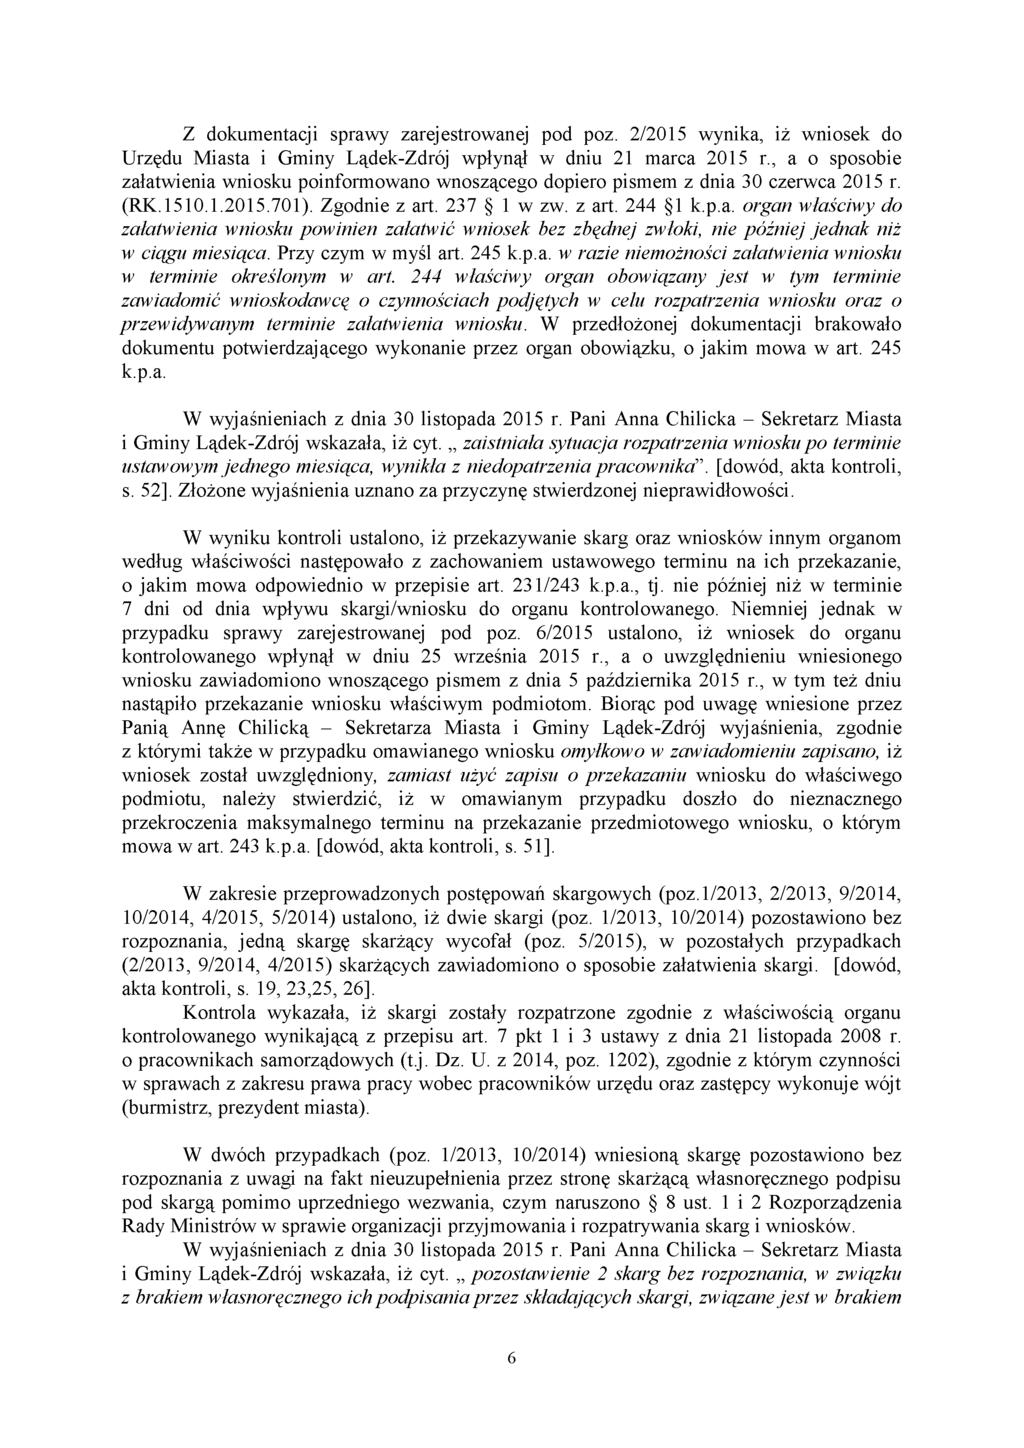 Z dokumentacji sprawy zarejestrowanej pod poz. 2/2015 wynika, iż wniosek do Urzędu Miasta i Gminy Lądek-Zdrój wpłynął w dniu 21 marca 2015 r.